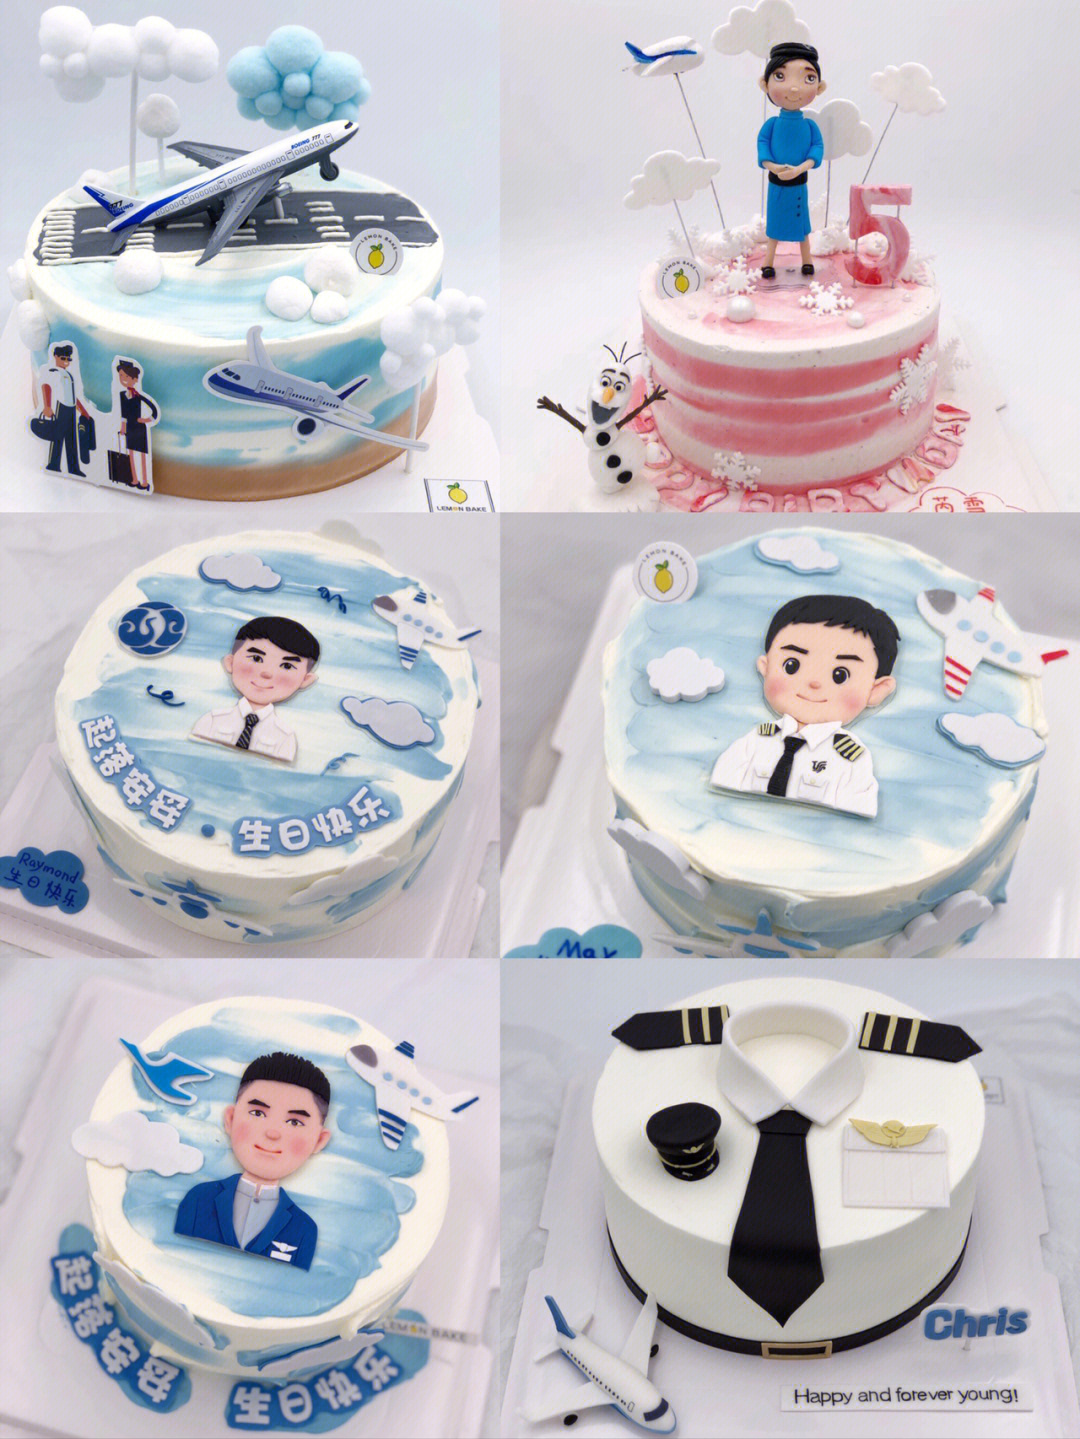 飞行员蛋糕空乘蛋糕机长蛋糕空姐蛋糕